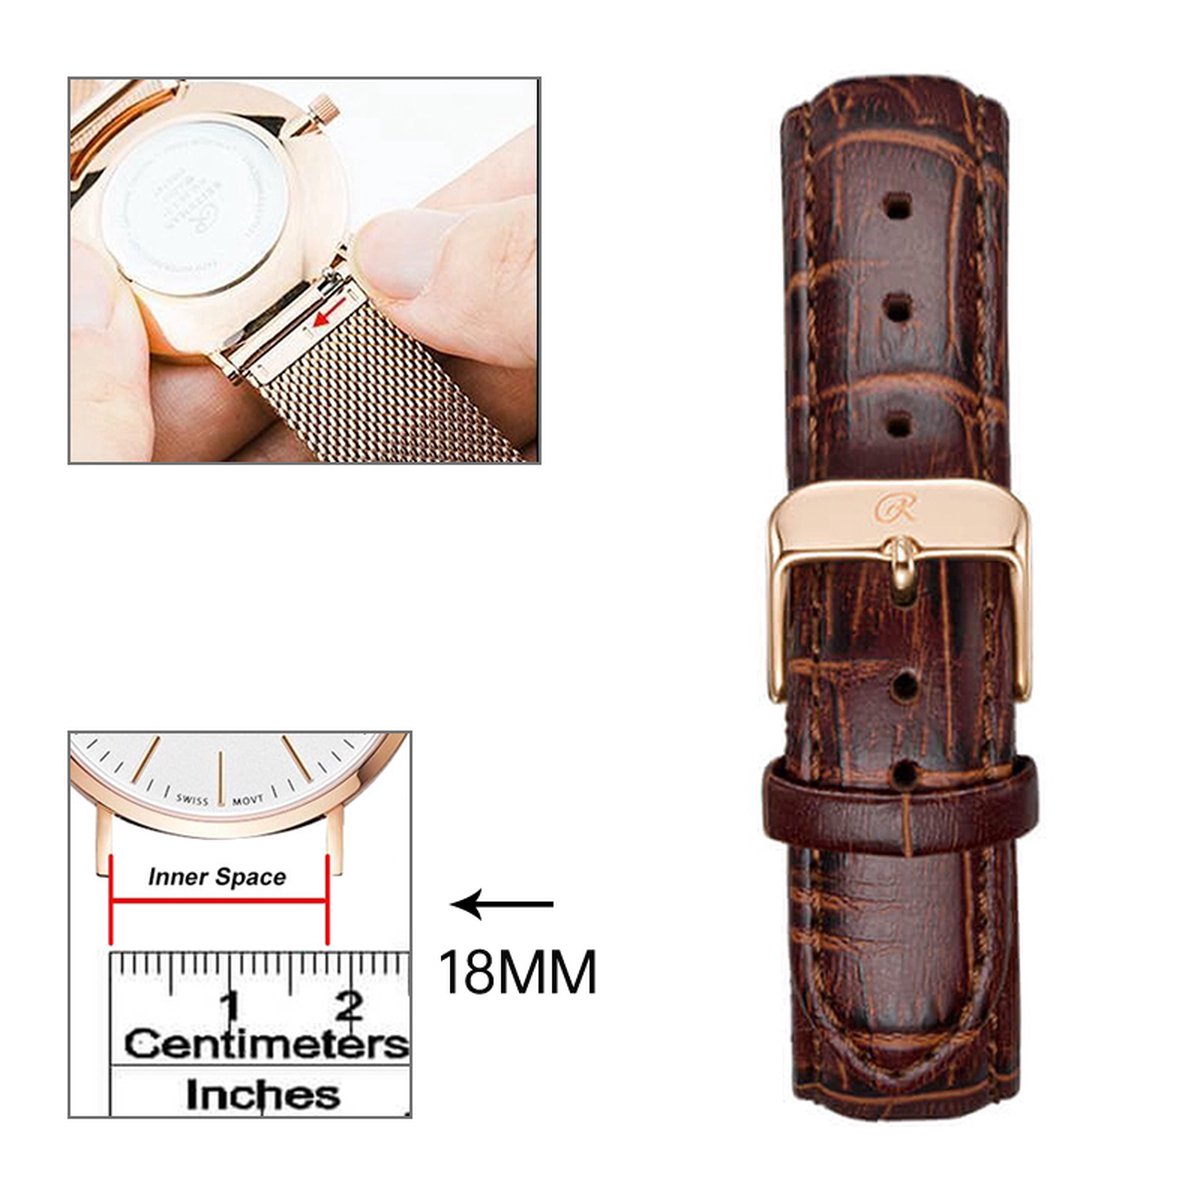 18mm Universele leren armband-leather strap in donkerbruin met roségouden accenten - Quick Release - Past op Alle Merken met 18mm Aanzetmaat